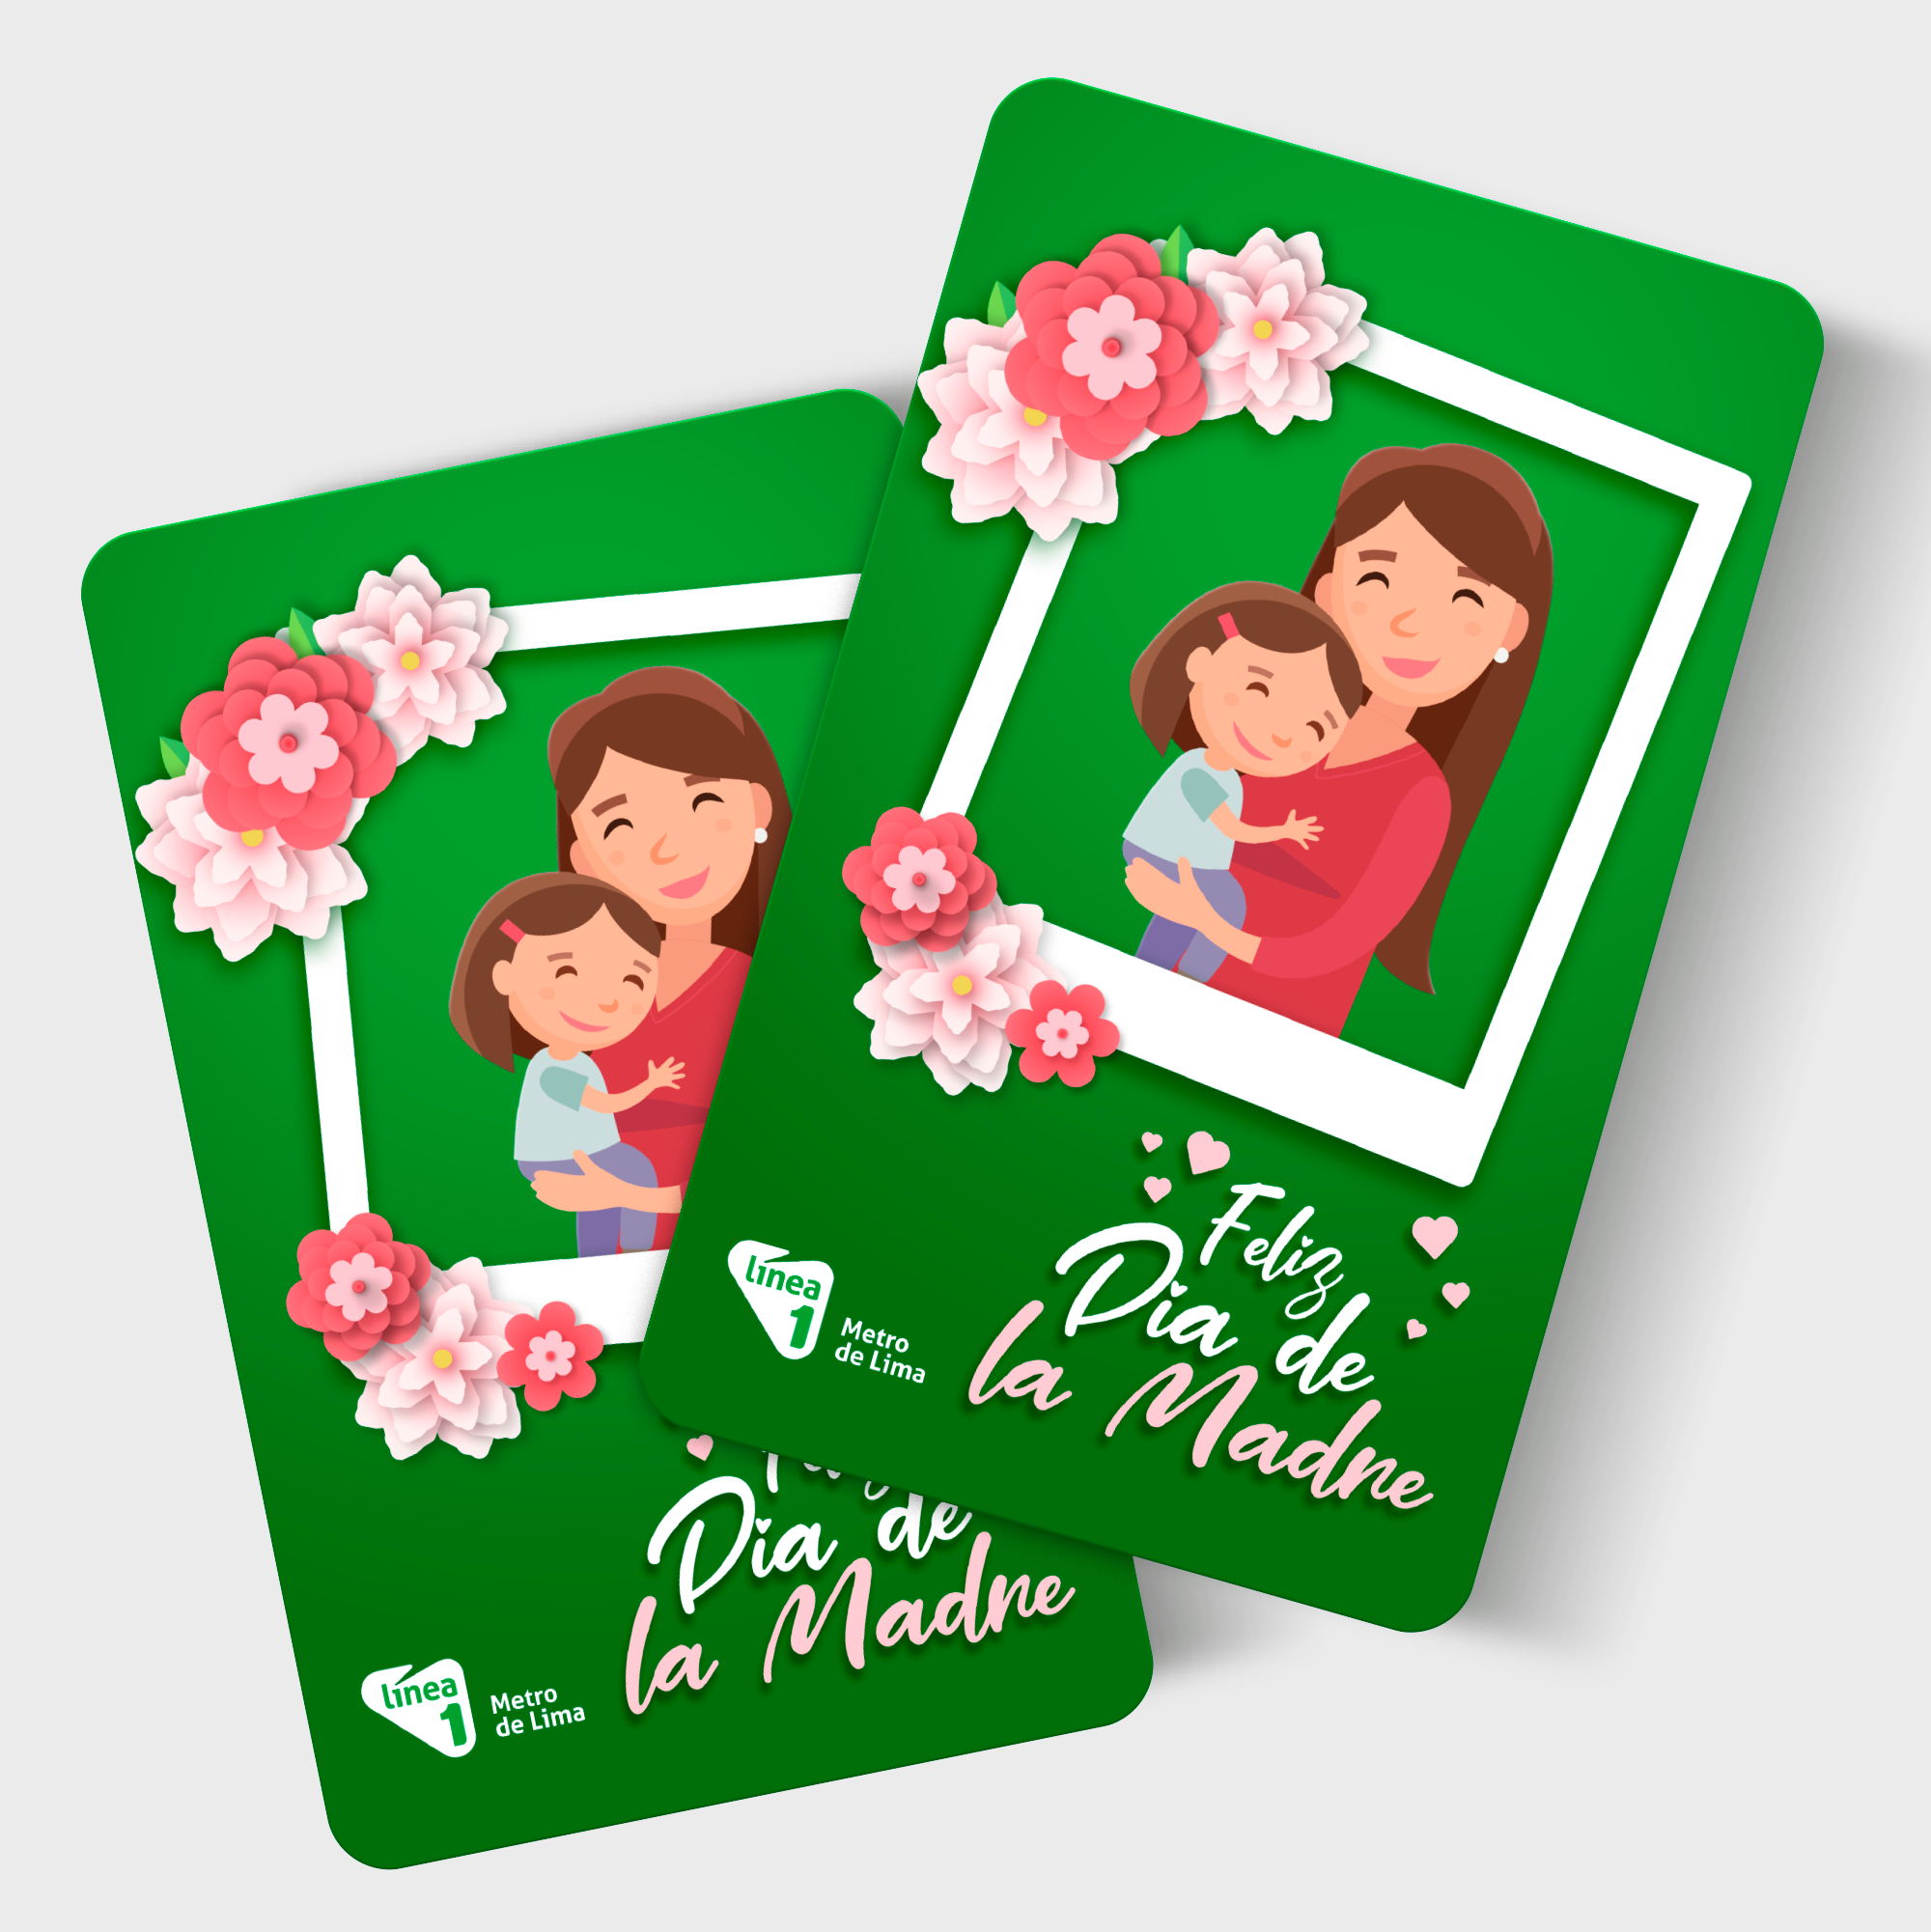 Diseño gráfico de tarjeta para el día de la madre.